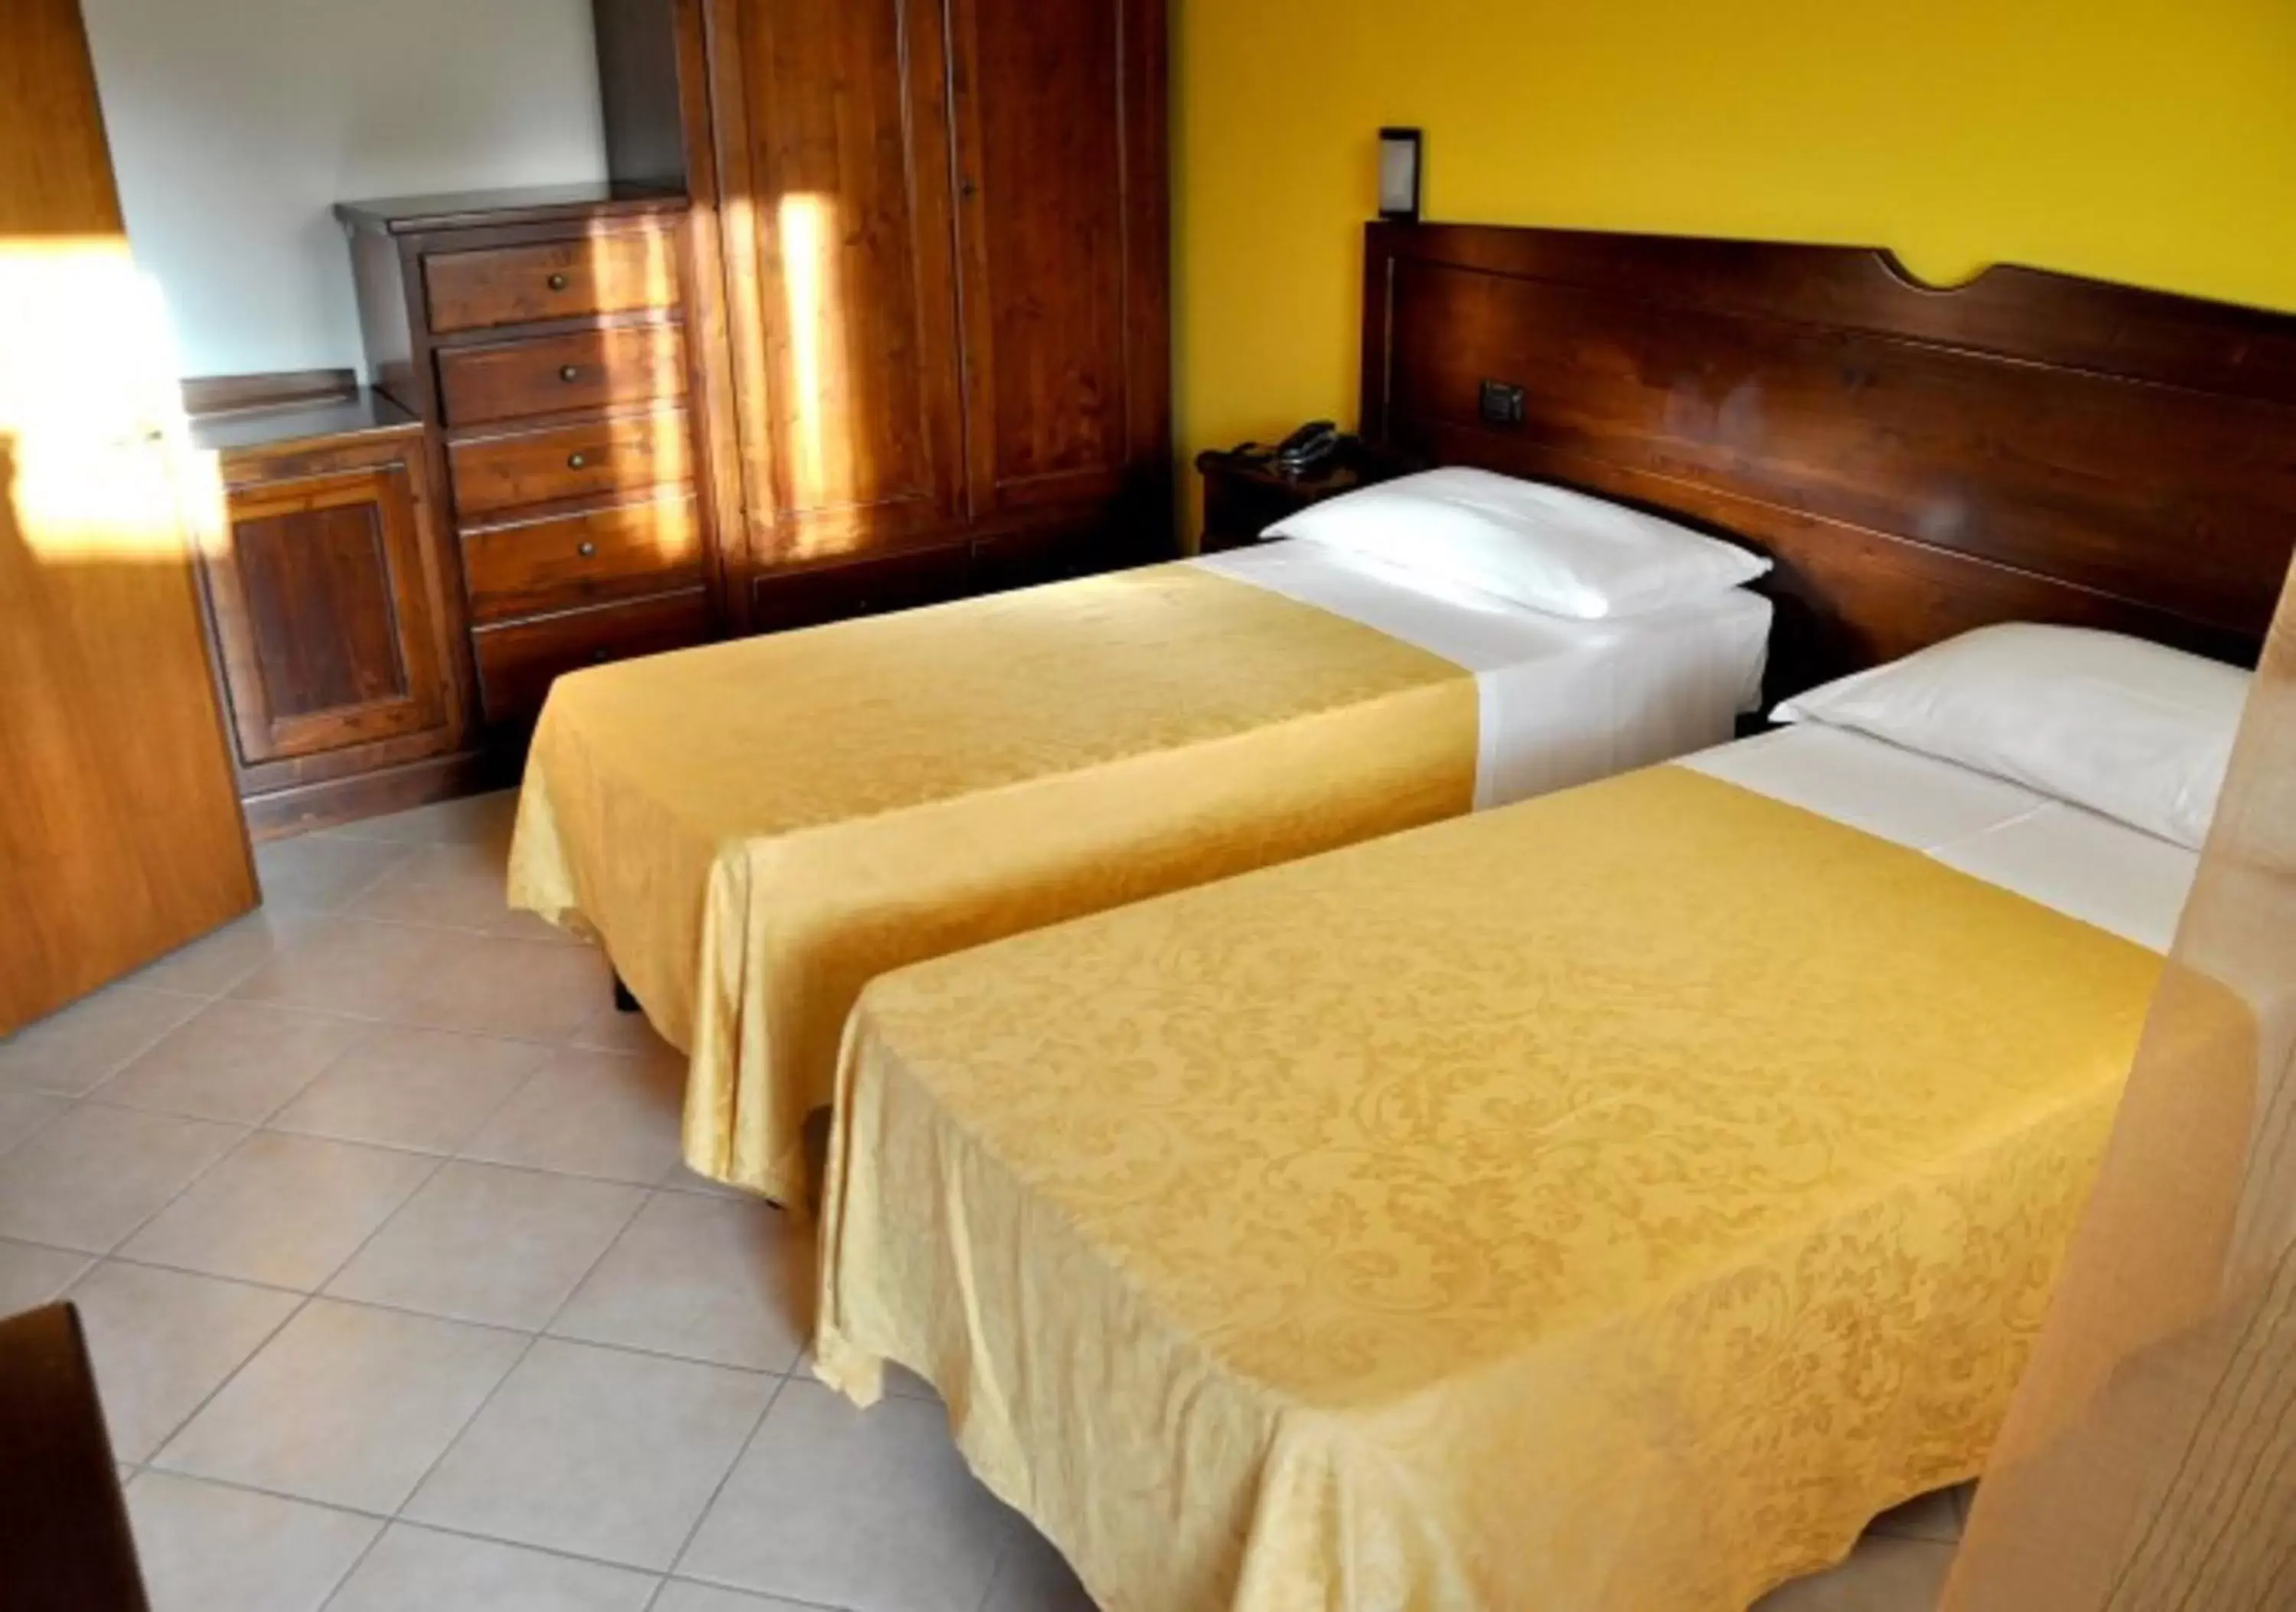 Bed, Room Photo in Hotel Masseria Le Pajare